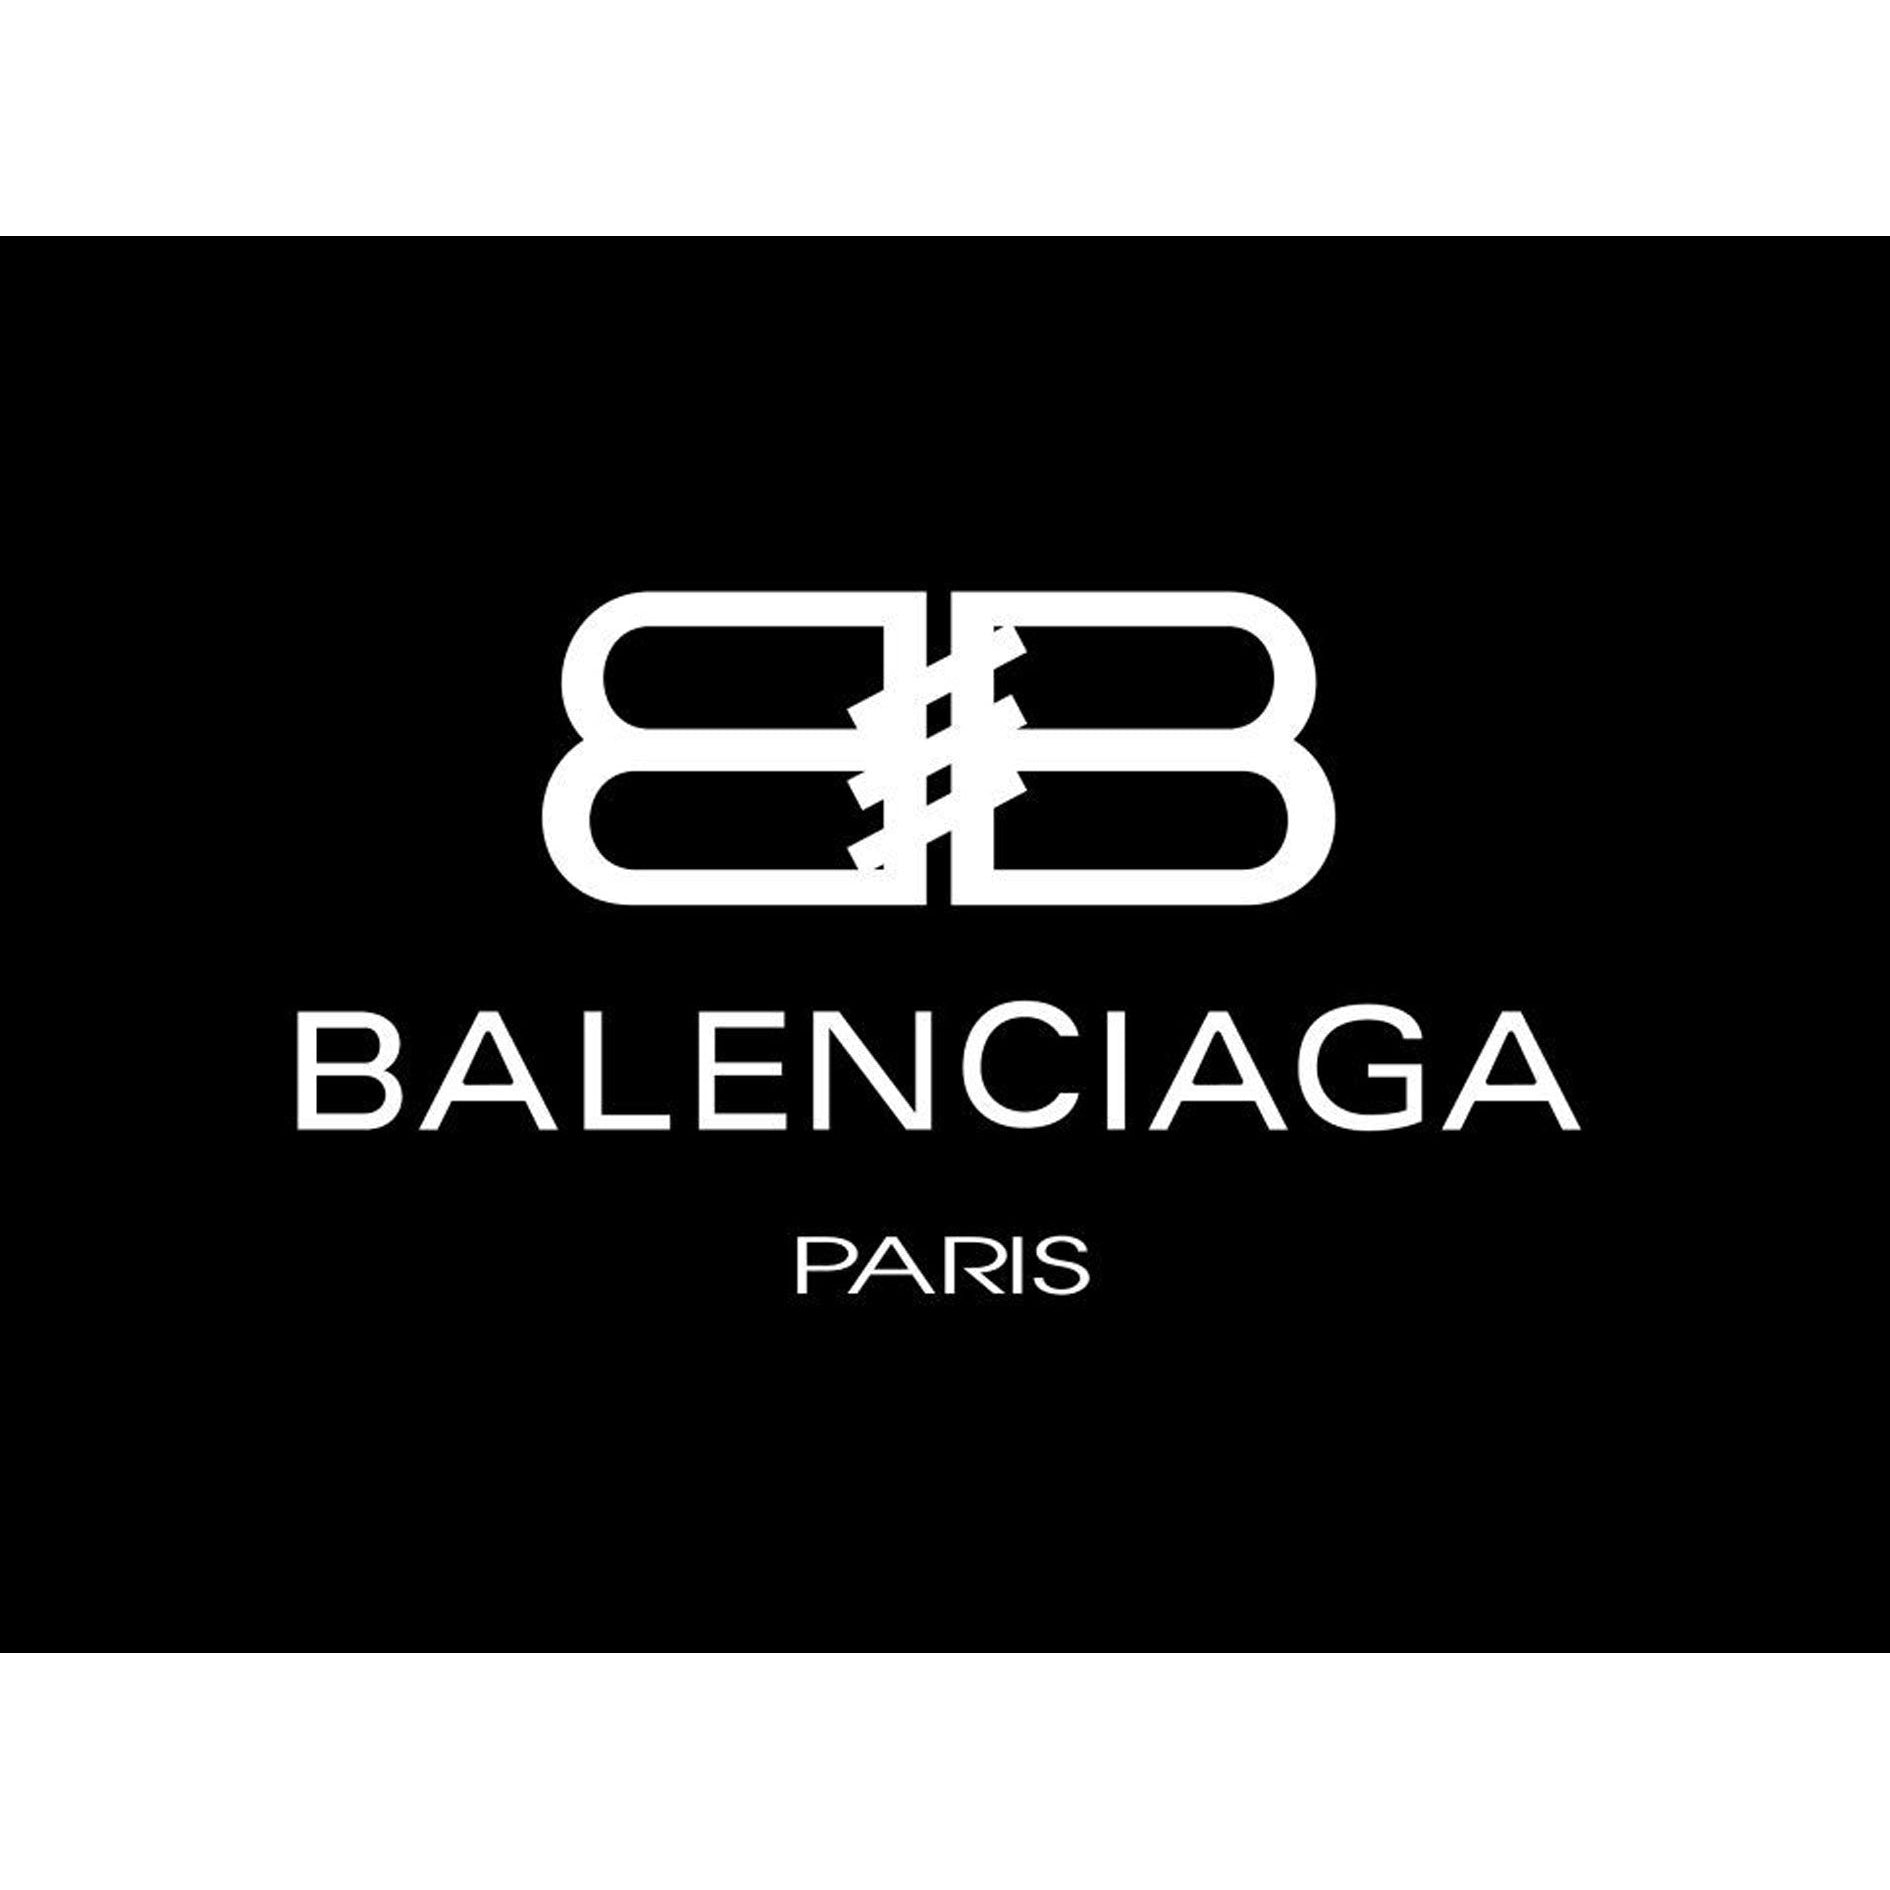 Balenciaga Card SVG Download Balenciaga Card Holders Vector File  Balenciaga logo png file Balenciaga Card SVG silhouette  Balenciaga  Clothing logo Art alevel